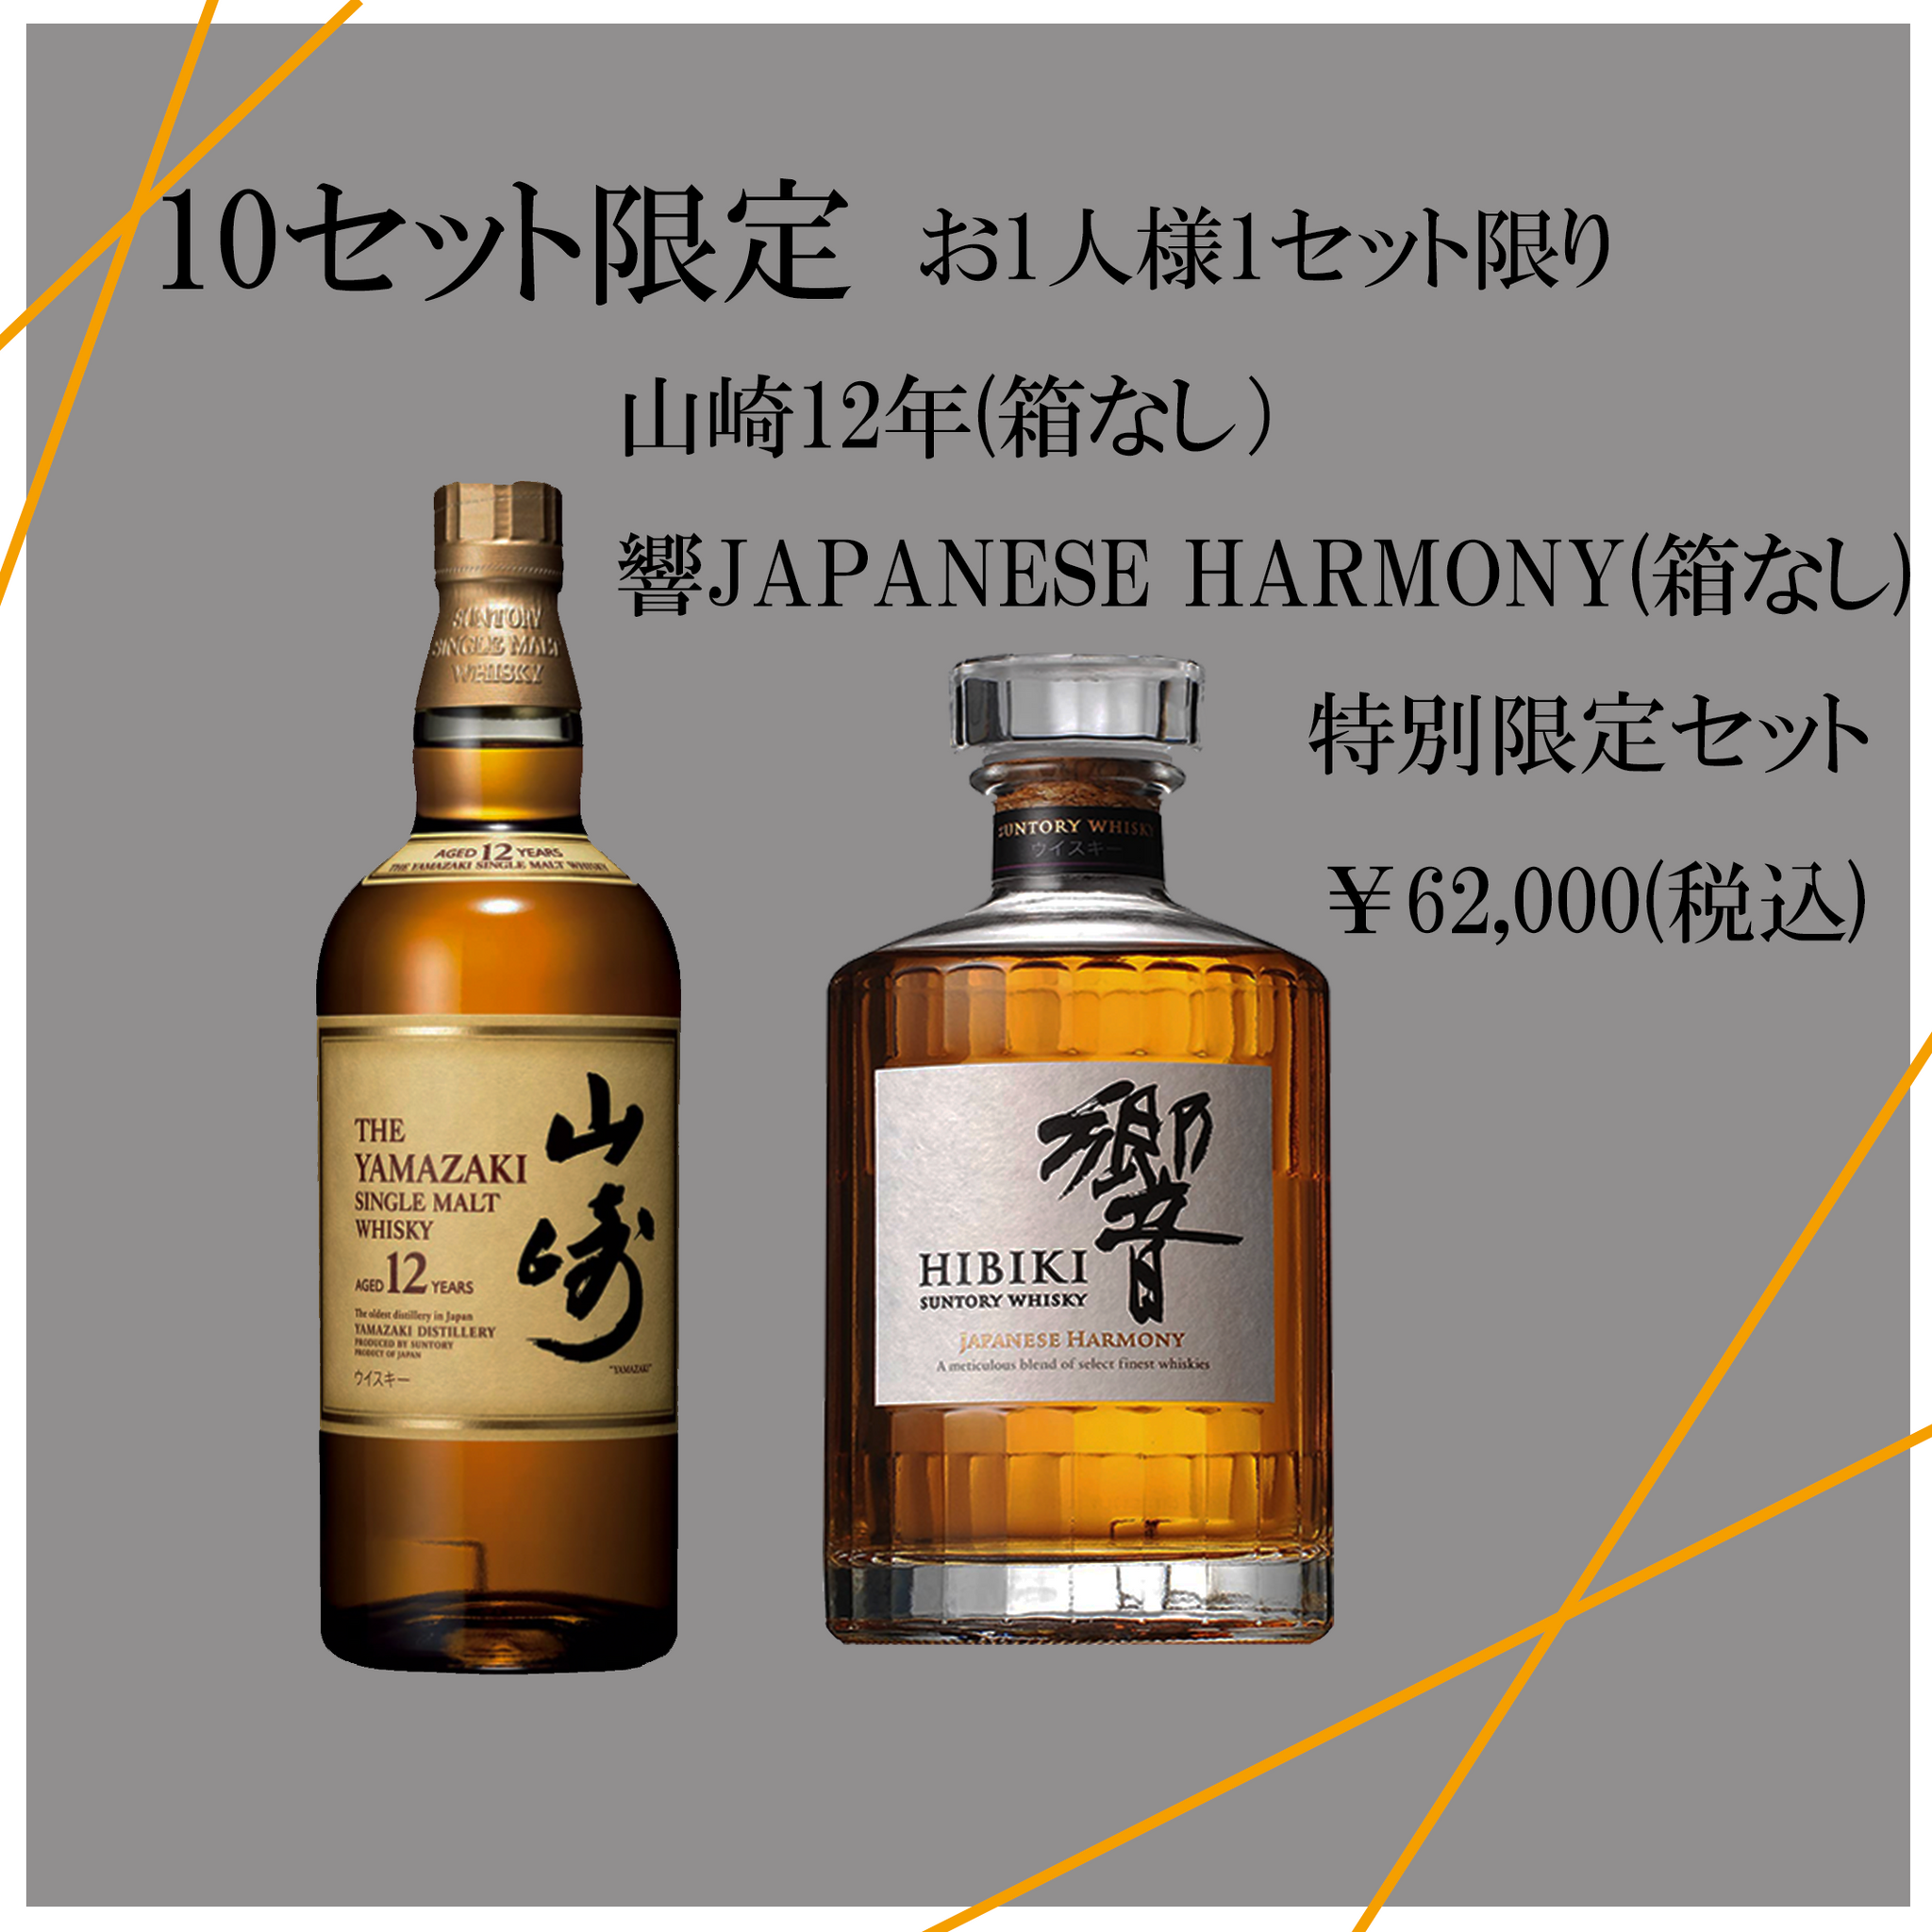 サントリー山崎12年 響Japanese Harmony - ウイスキー